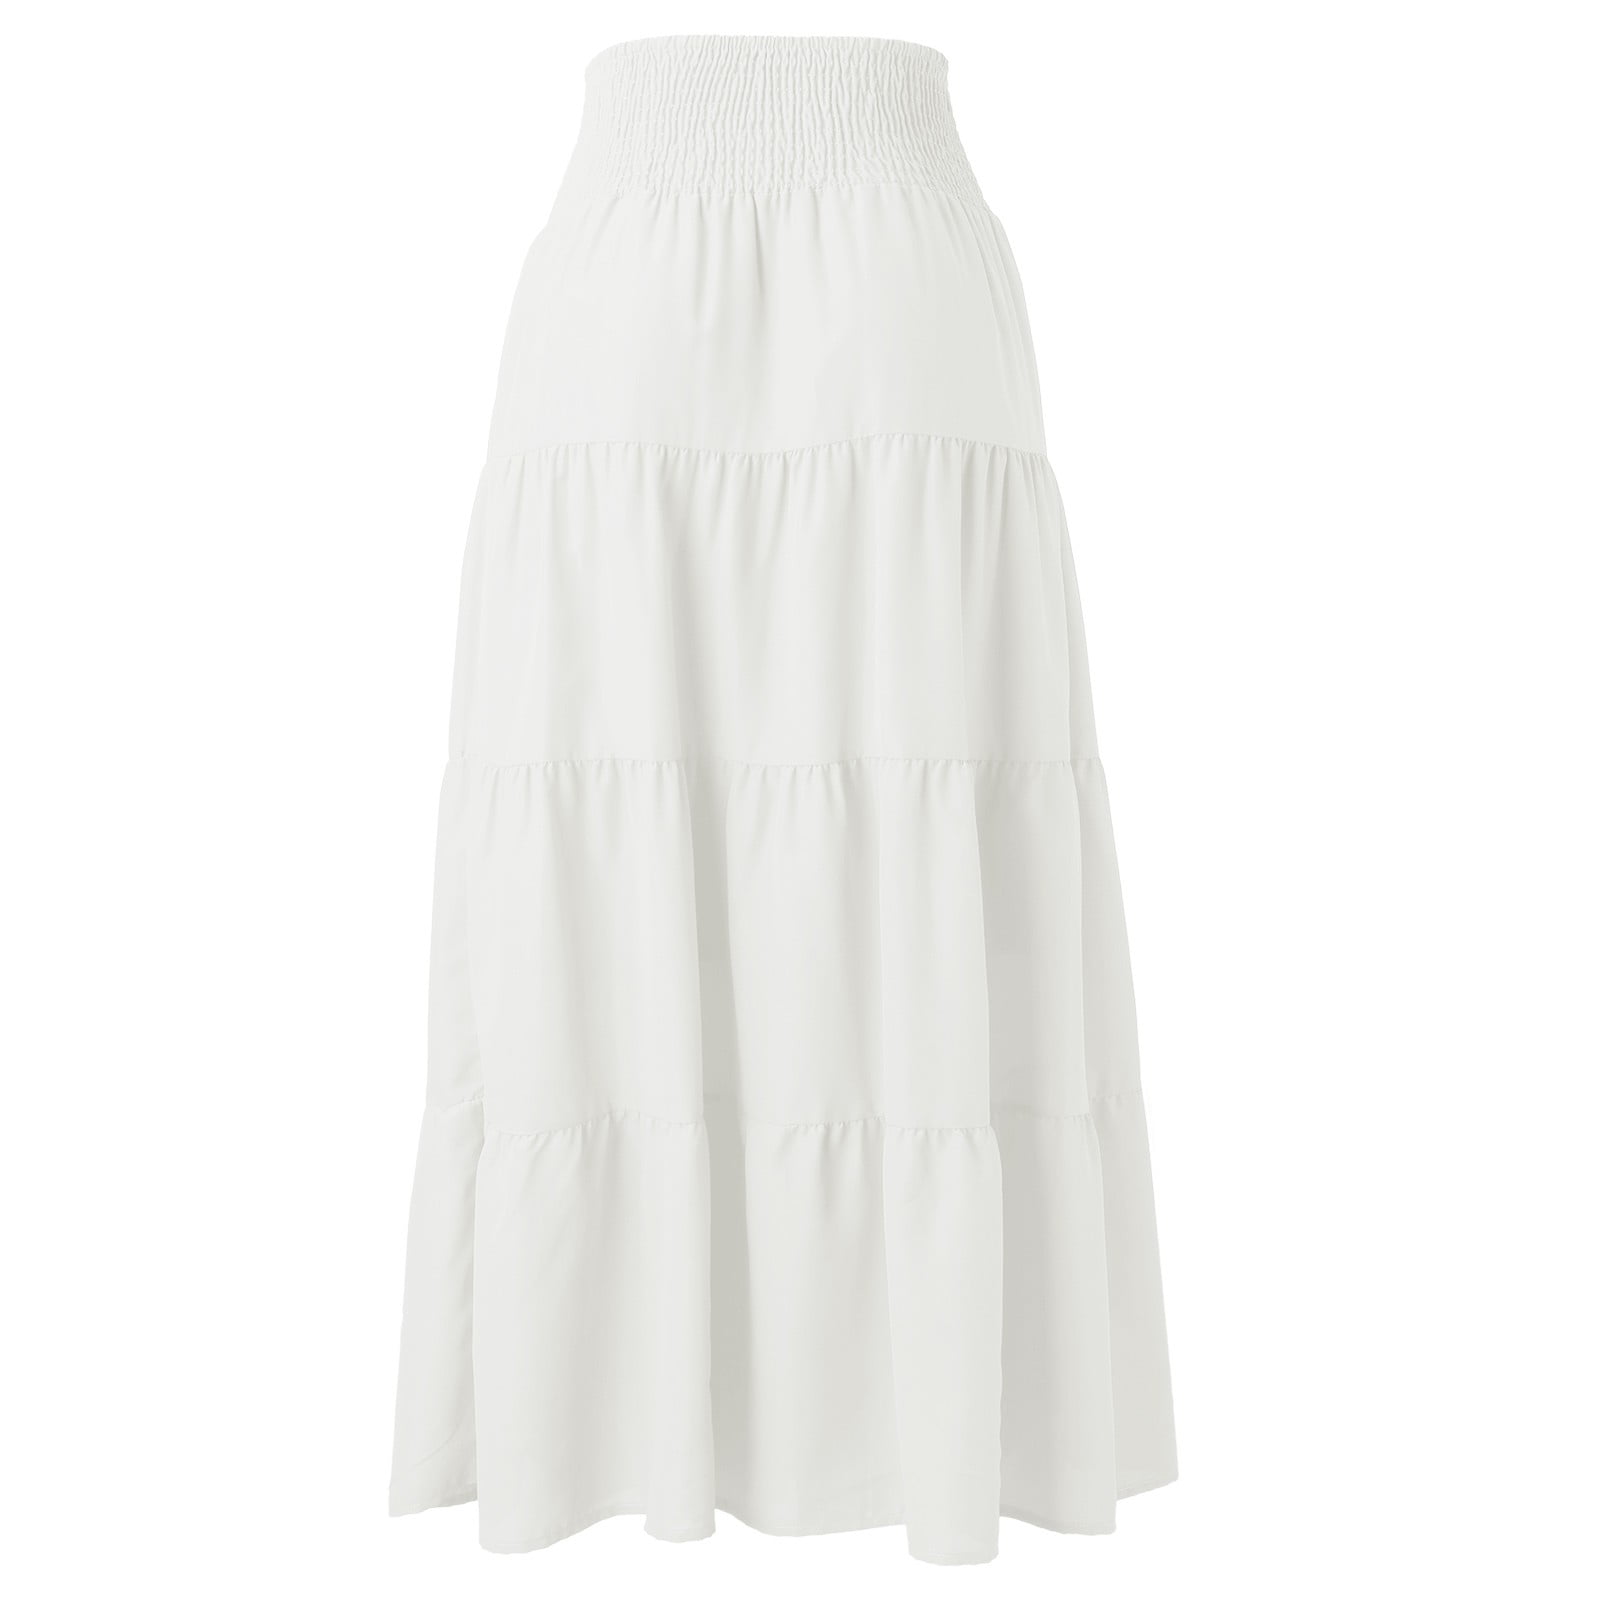 White Maxi Skirt, Evening Skirt, Plus Size Clothing, Pleated Skirt, Plus  Size Skirt, Formal Skirt, Flare Skirt, Full Skirt, Long Skirt - Etsy